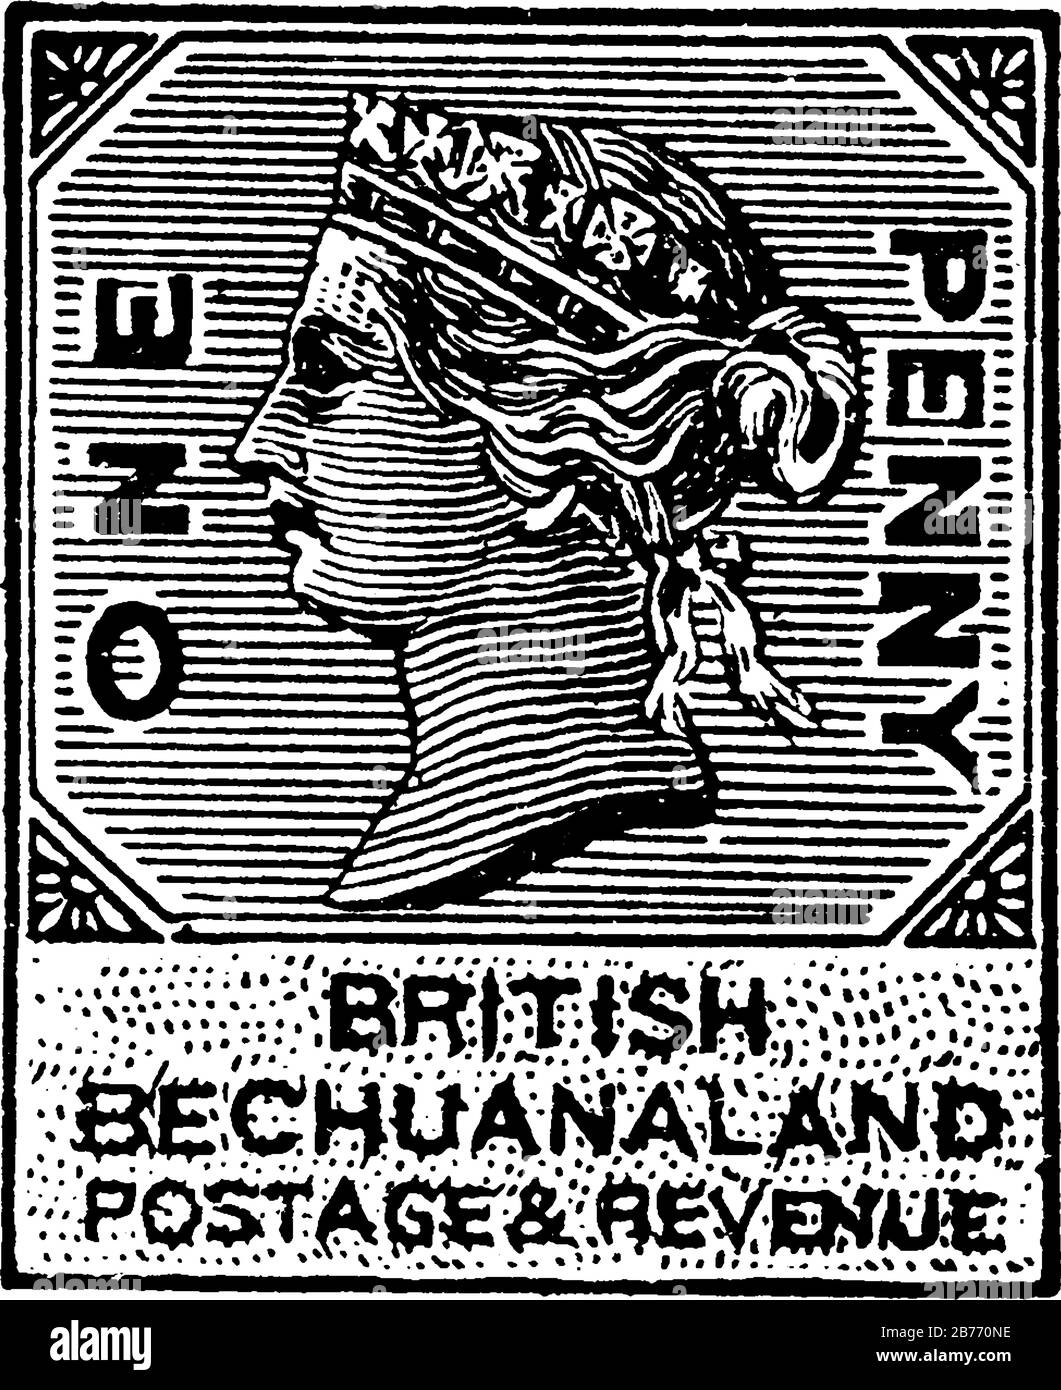 Britischer Bechuanaland Stempel (1 Penny) aus dem Jahr 1881a, ein kleines selbstklebendes Stück Papier steckte an etwas fest, um eine Menge an gezahltem Geld zu zeigen, Vintage Line d Stock Vektor